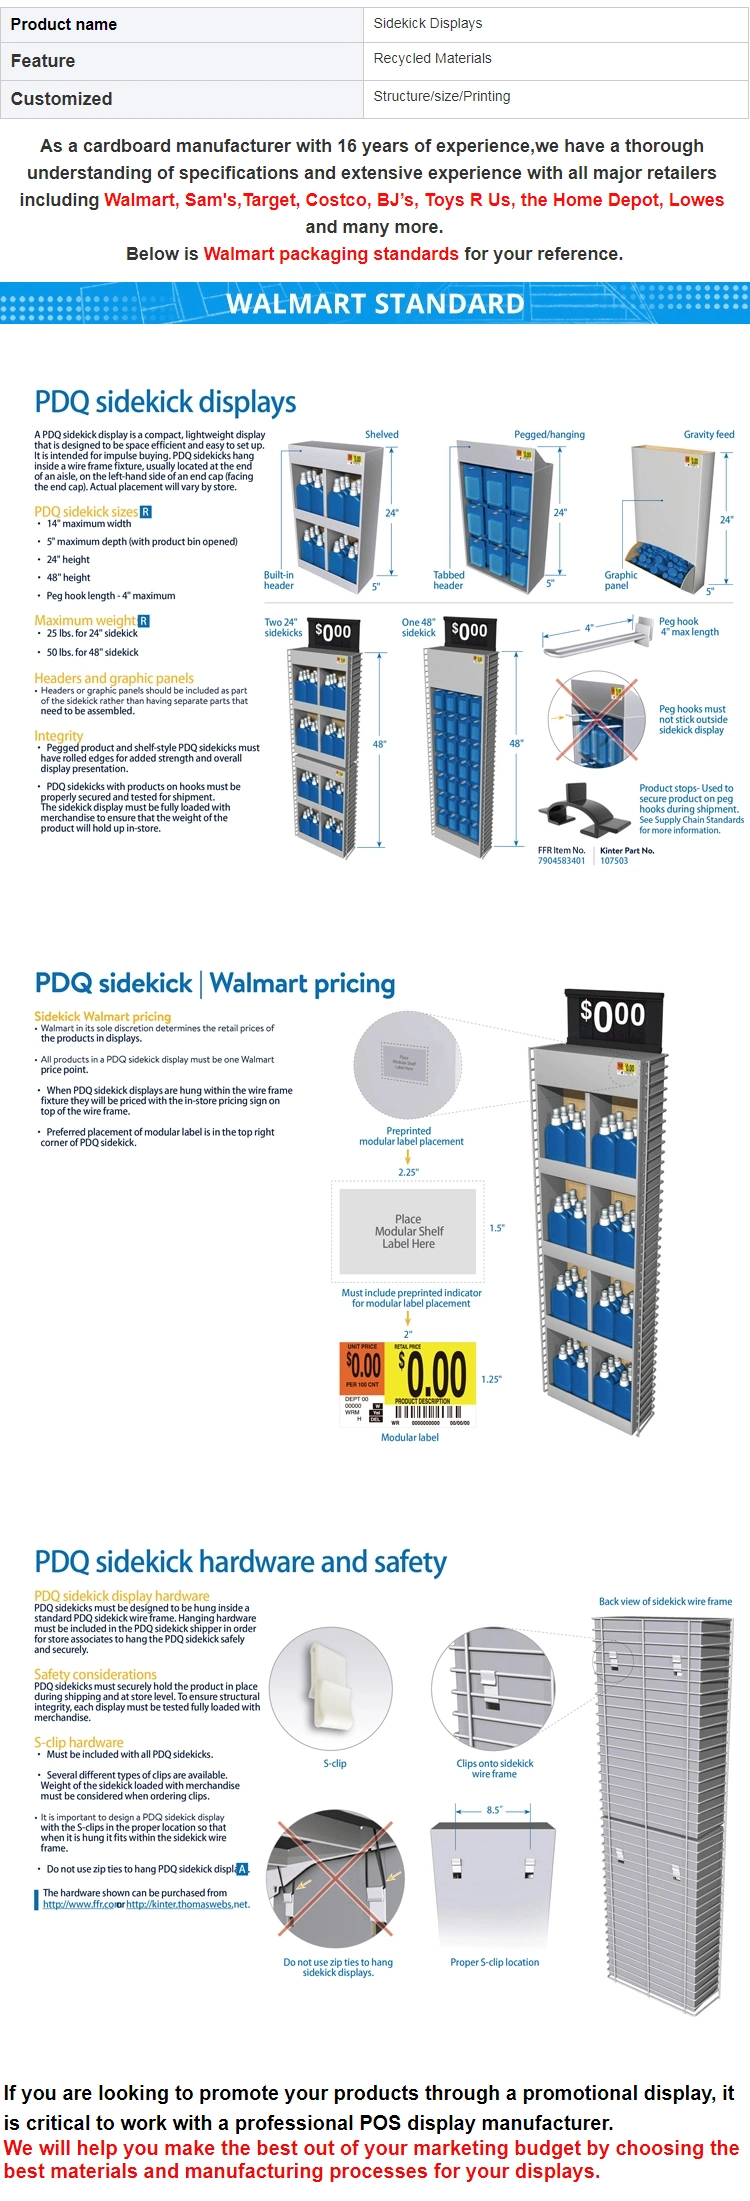 Free Standing Slatwall Display Hangsell Unit PDQ Sidekick Hardware and Safety Flat Sidekick Display